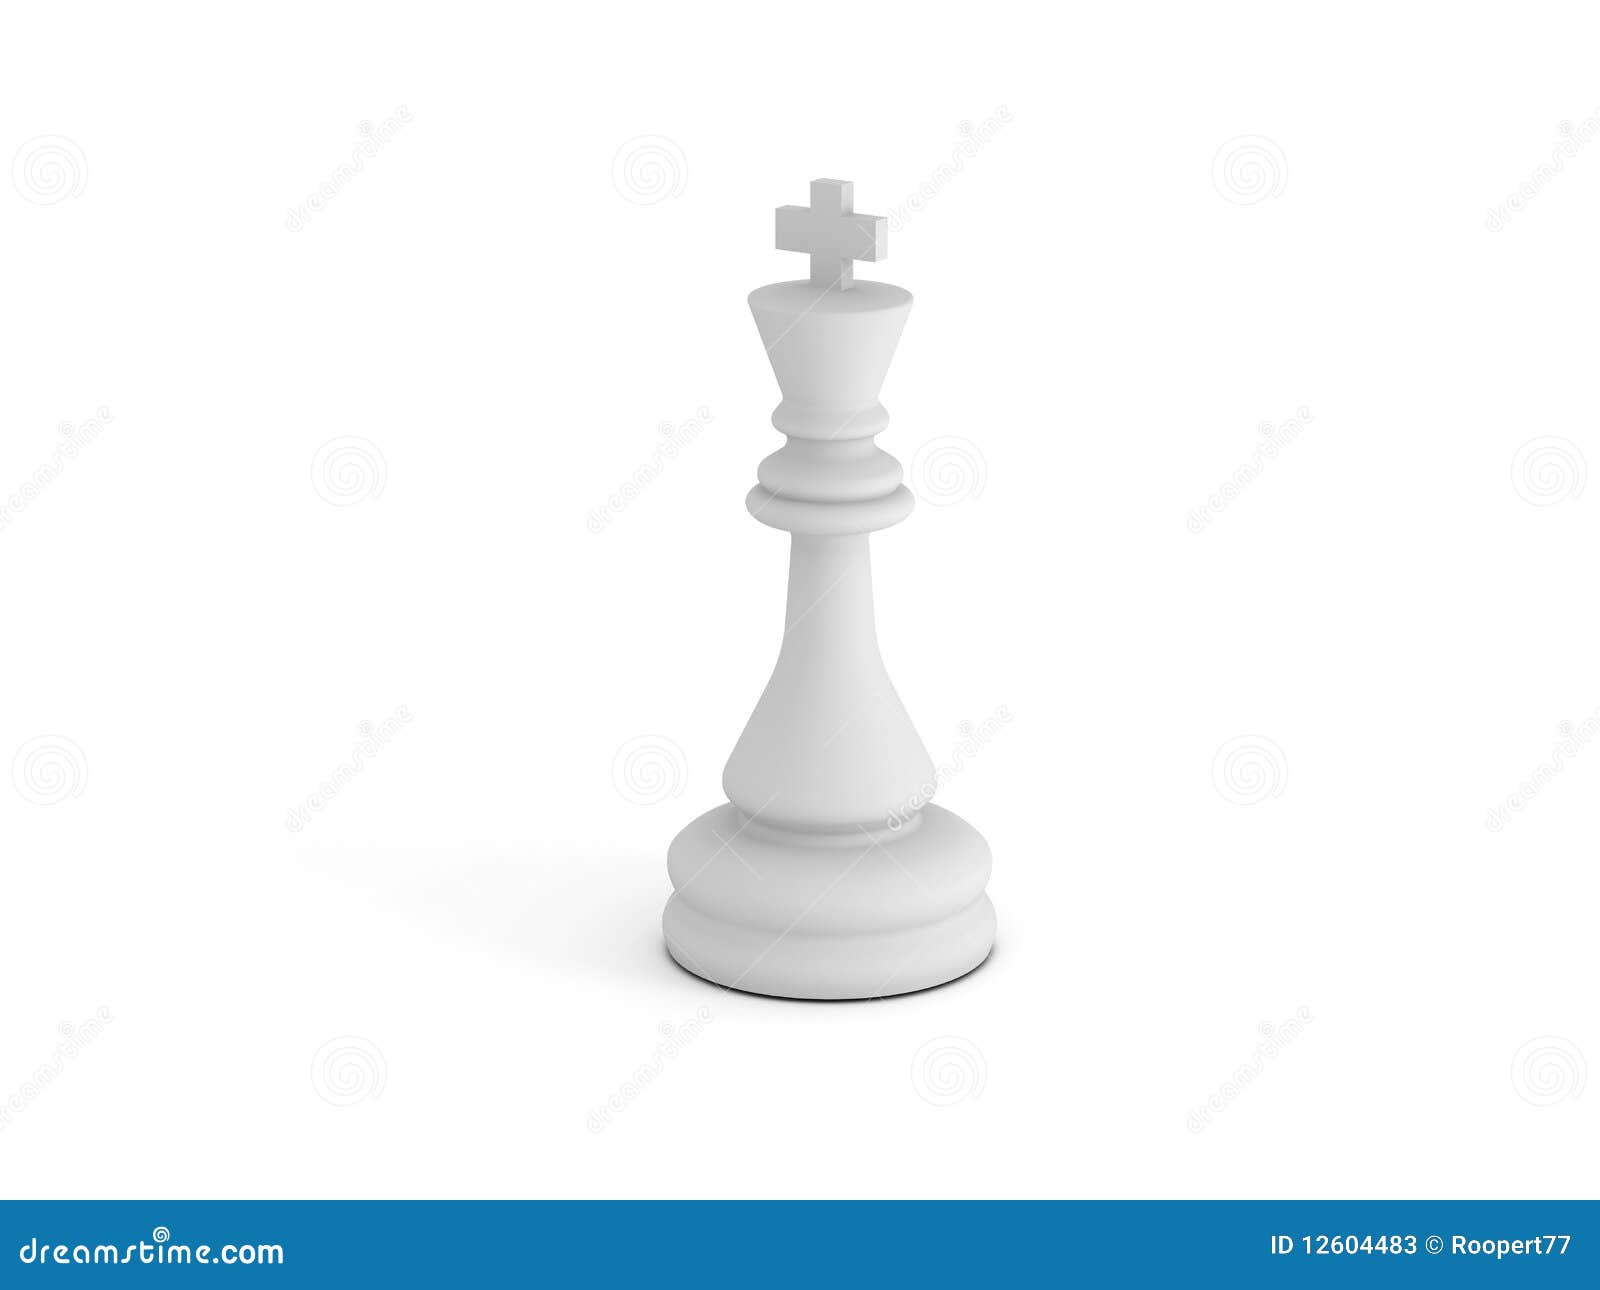 White Chess King Stock Photos - Image: 12604483